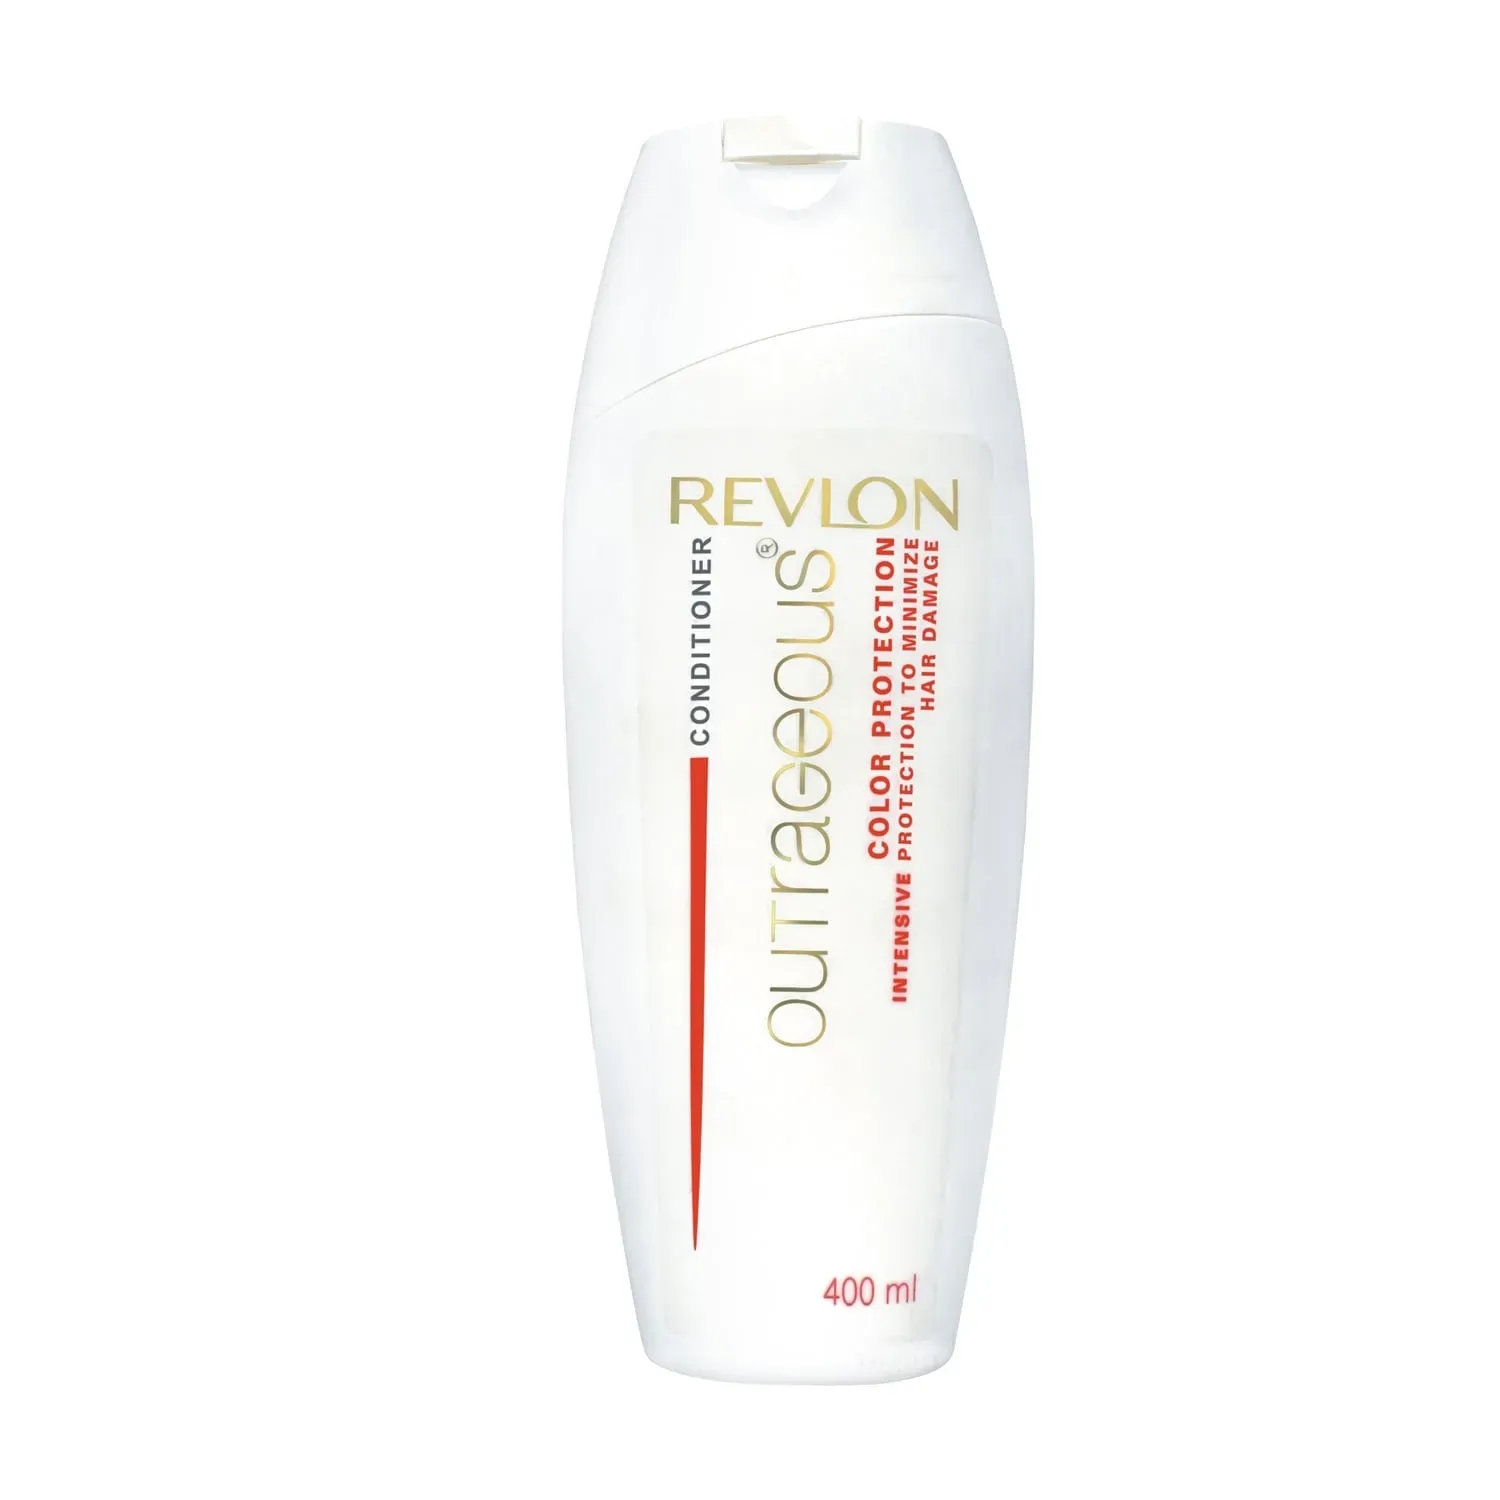 Revlon | Revlon Outrageous Color Protection Conditioner (400ml)